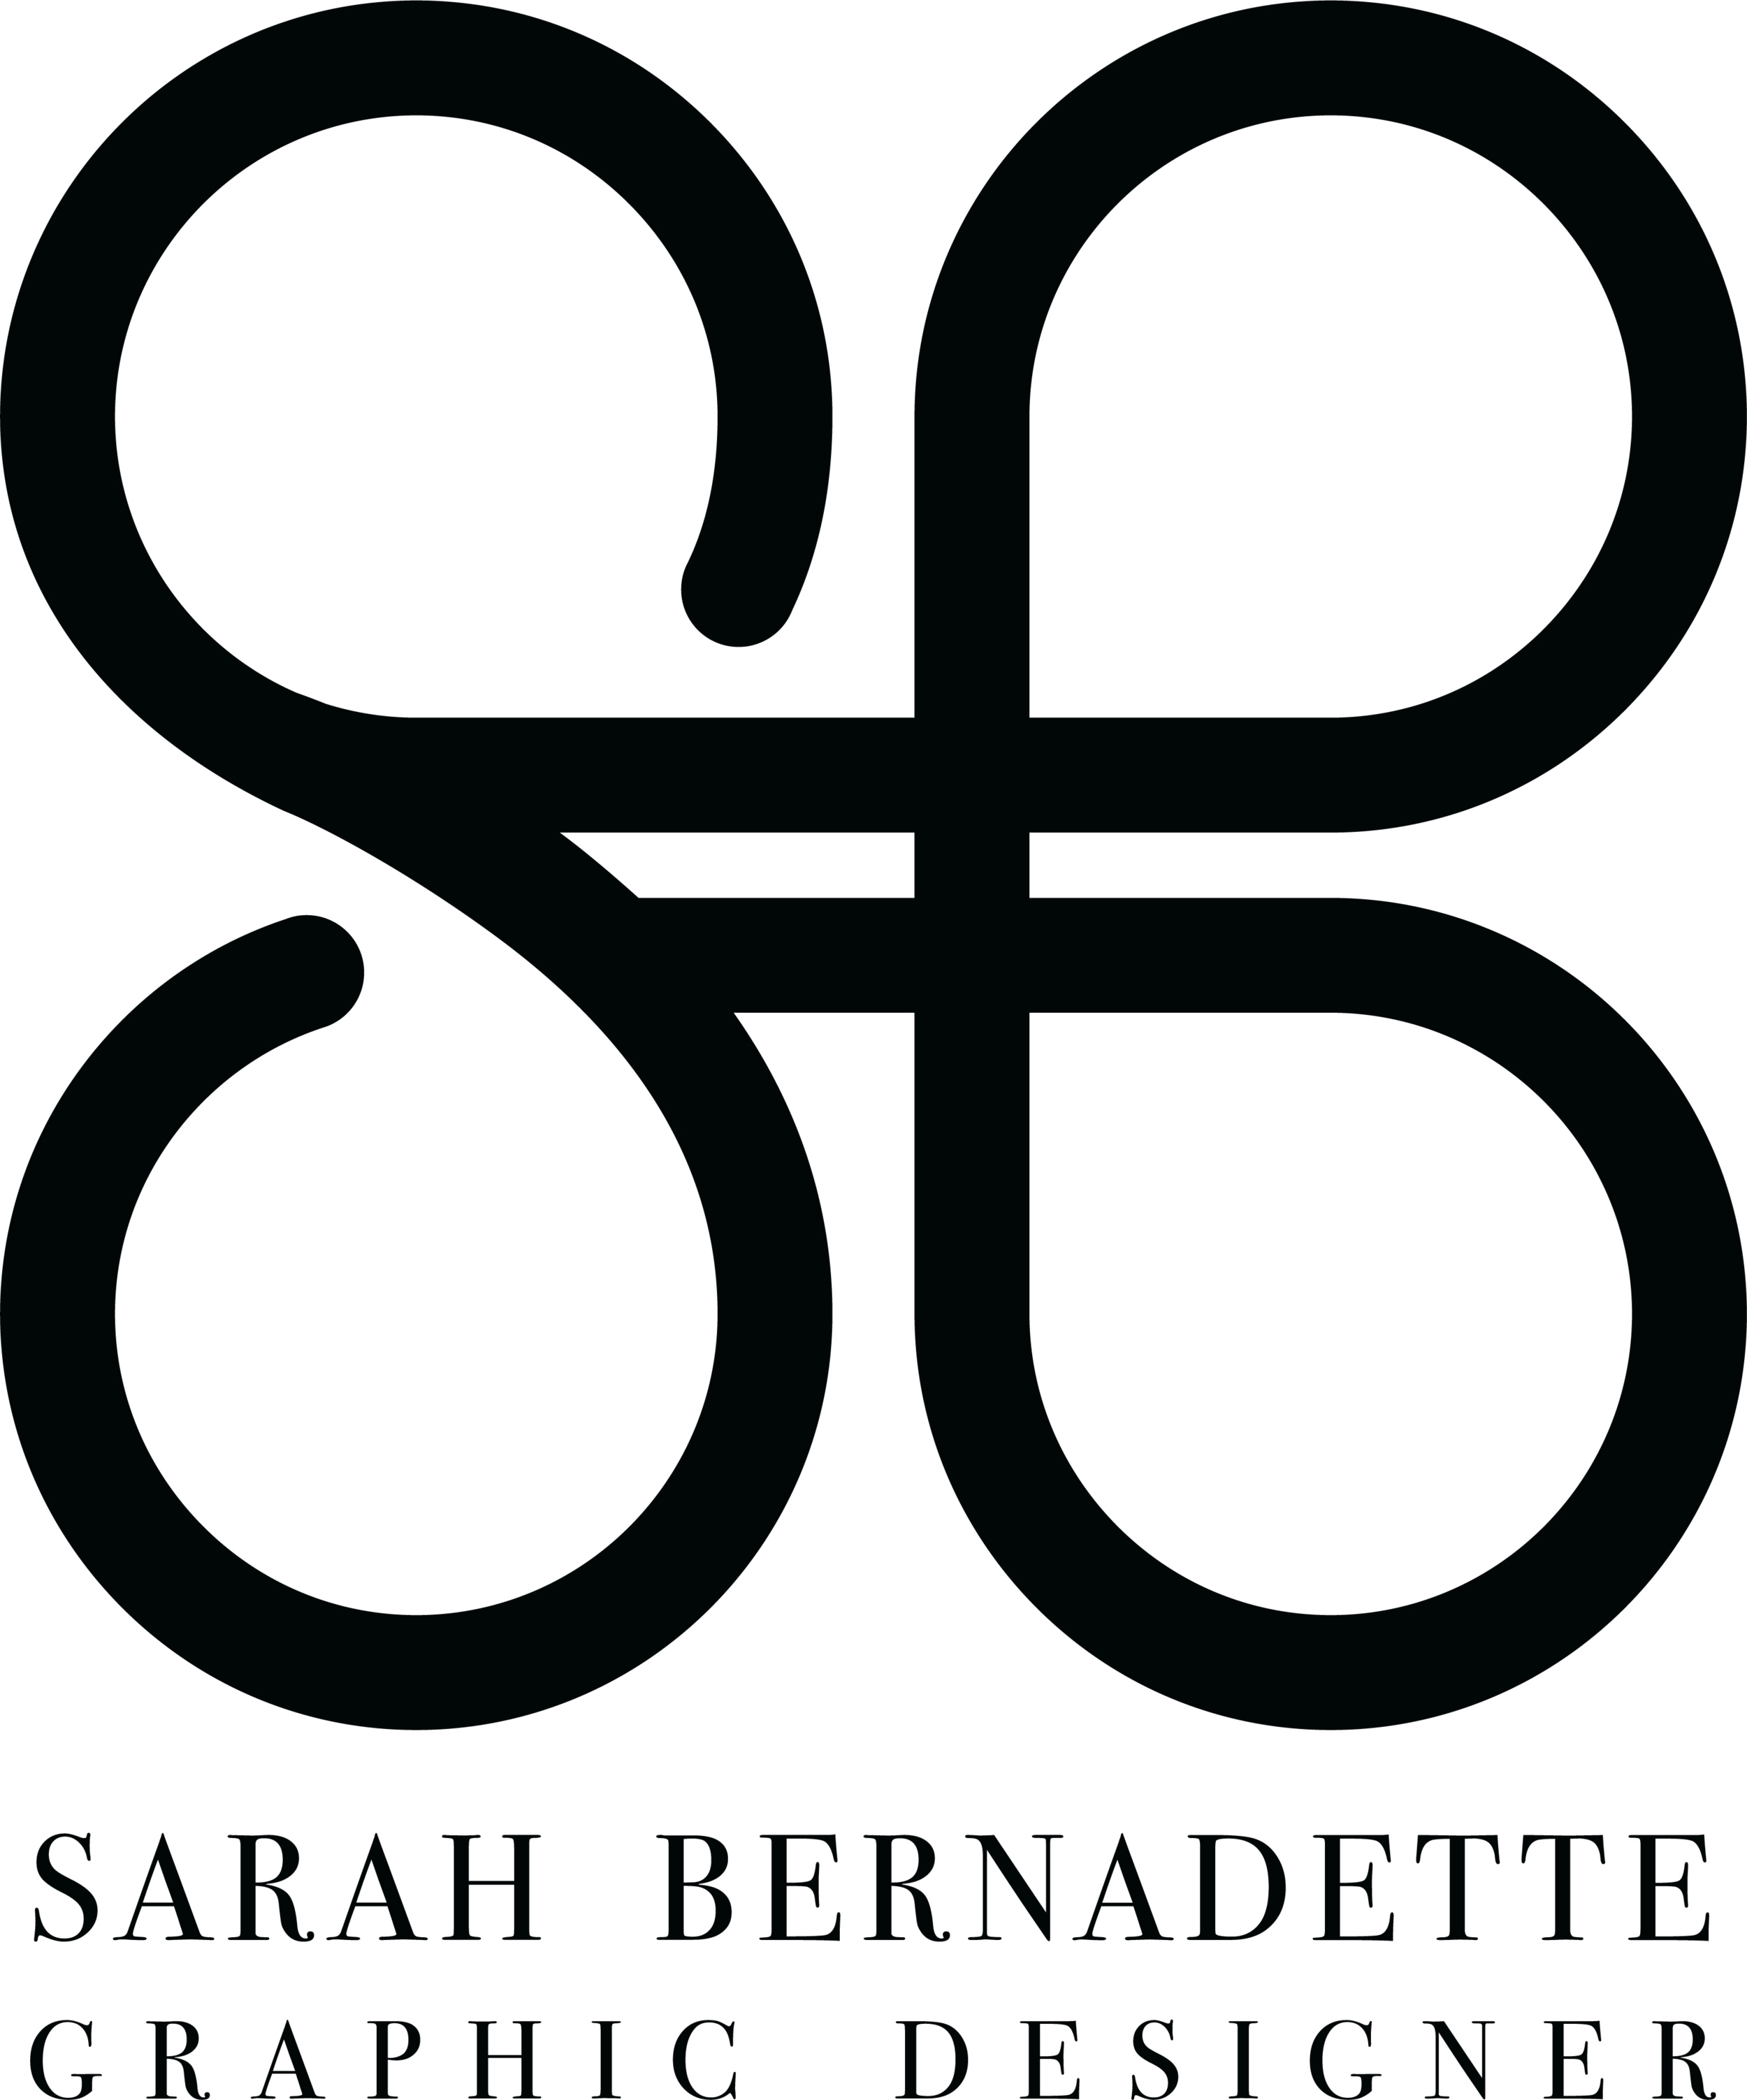 Sarah Bernadette